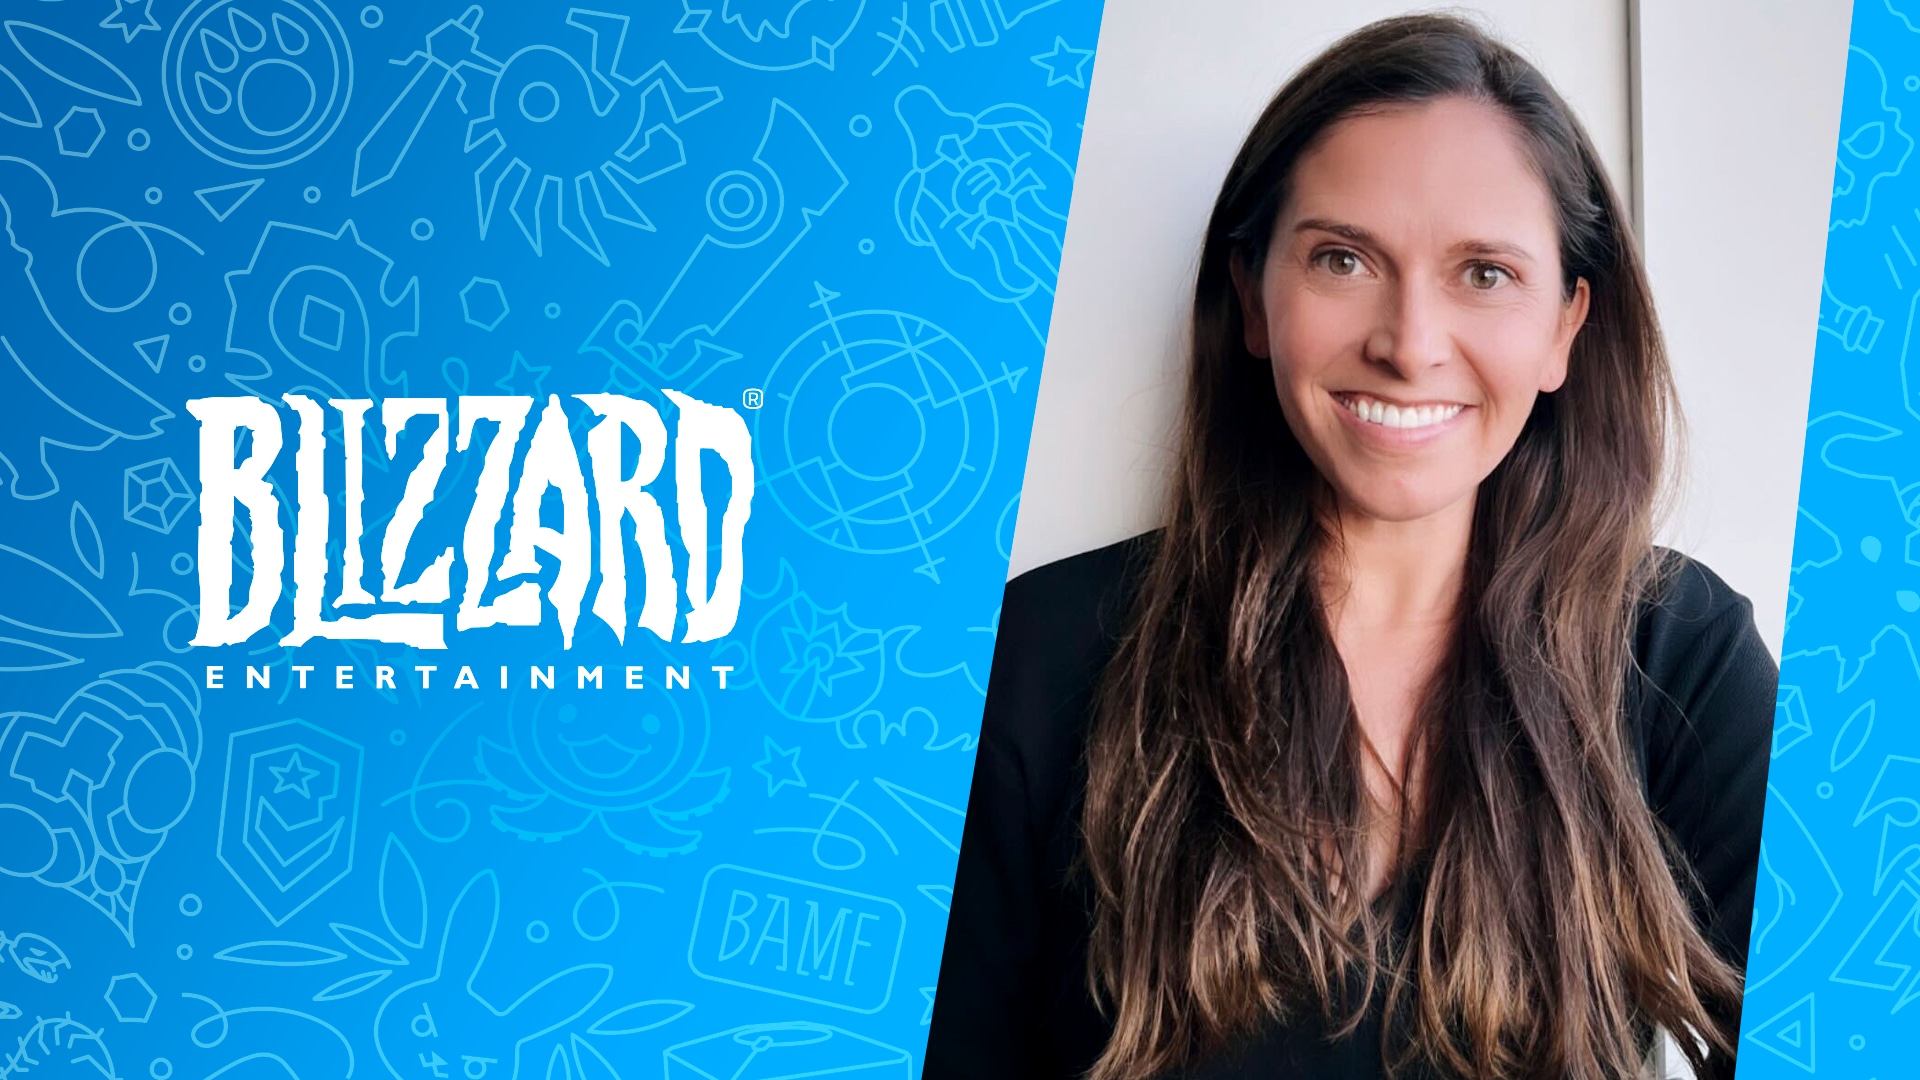 Blizzard Entertainment souhaite la bienvenue à Jessica Martinez, en tant que vice-présidente chargée de la culture